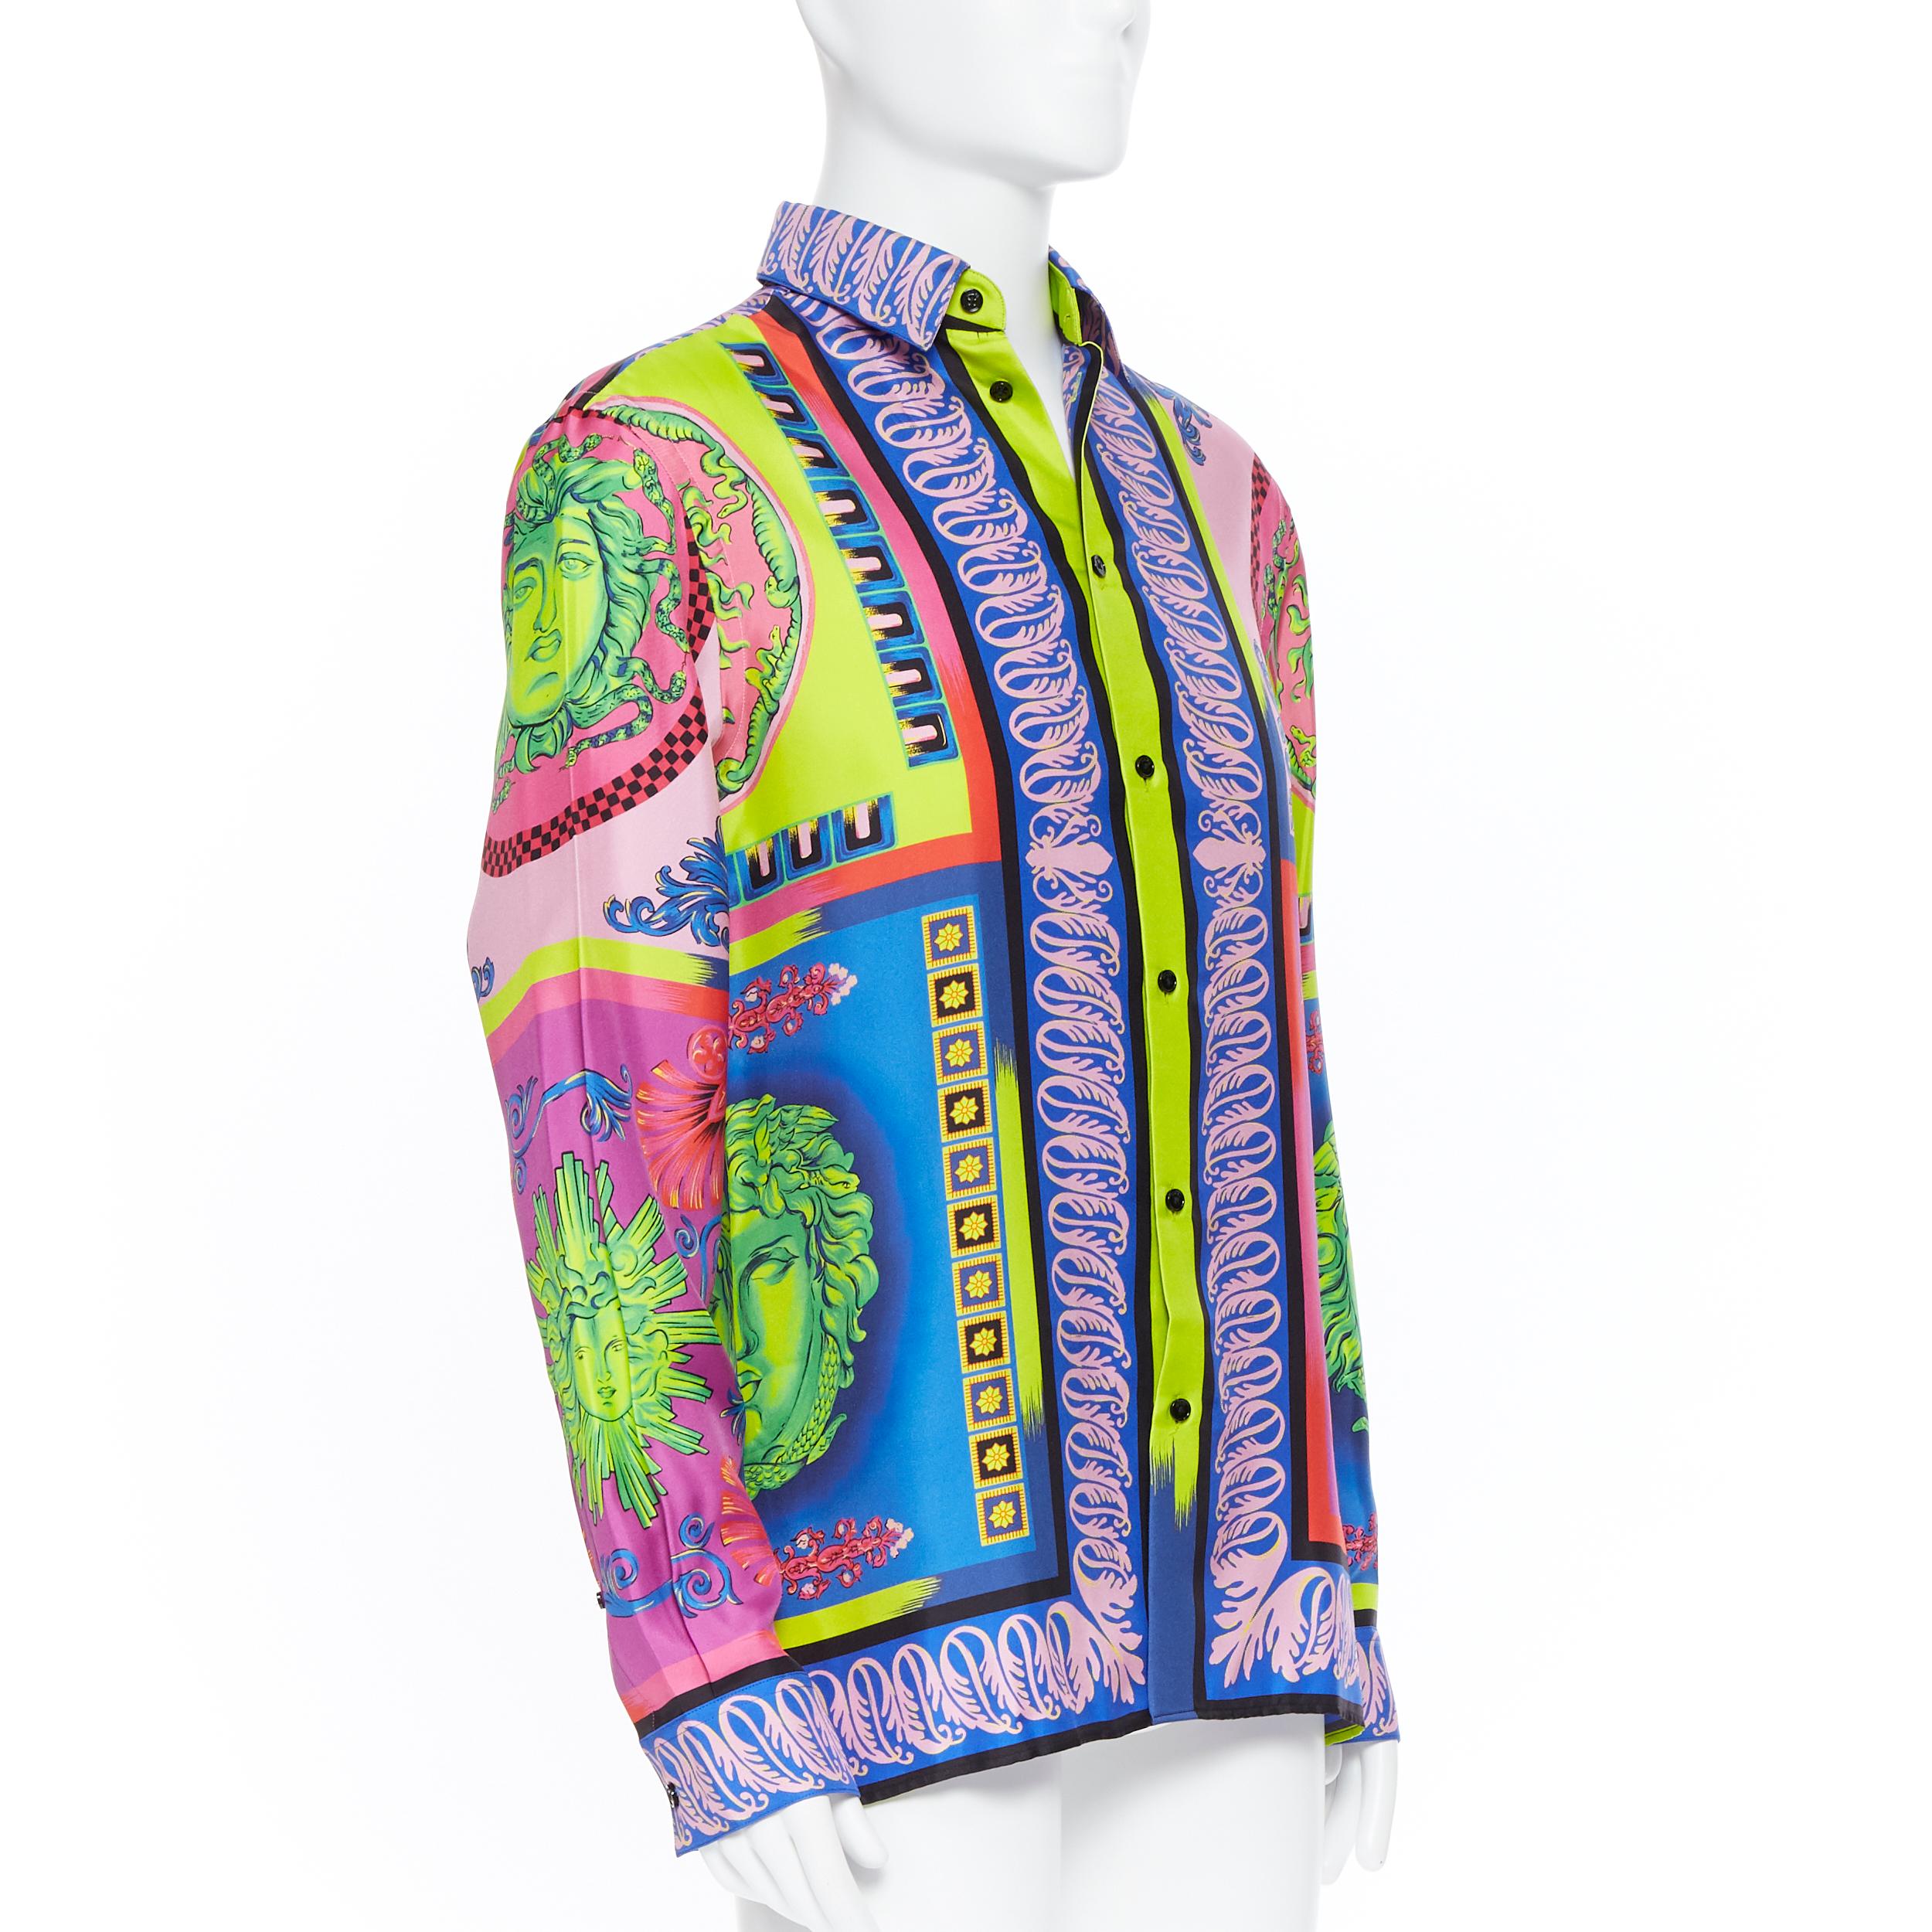 Men's new VERSACE 2018 Runway Pop Foulard Medusa neon baroque 100% silk shirt EU39 M